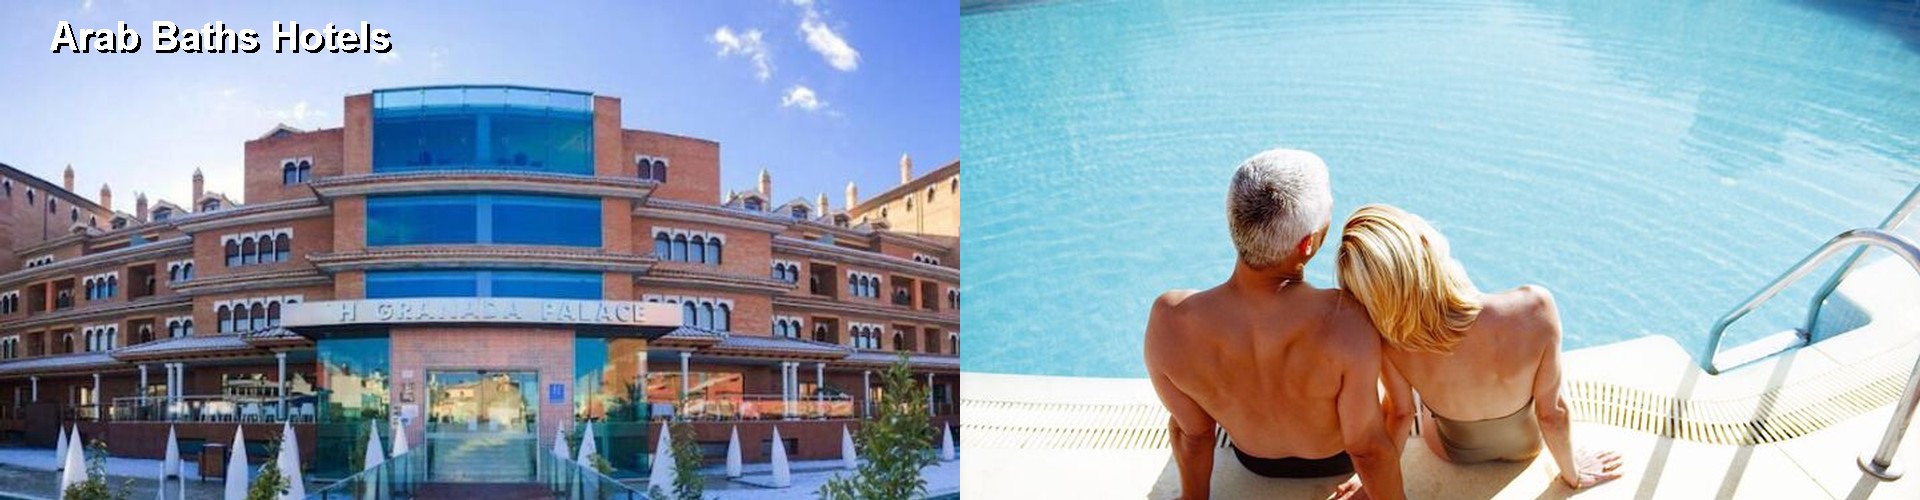 5 Best Hotels near Arab Baths